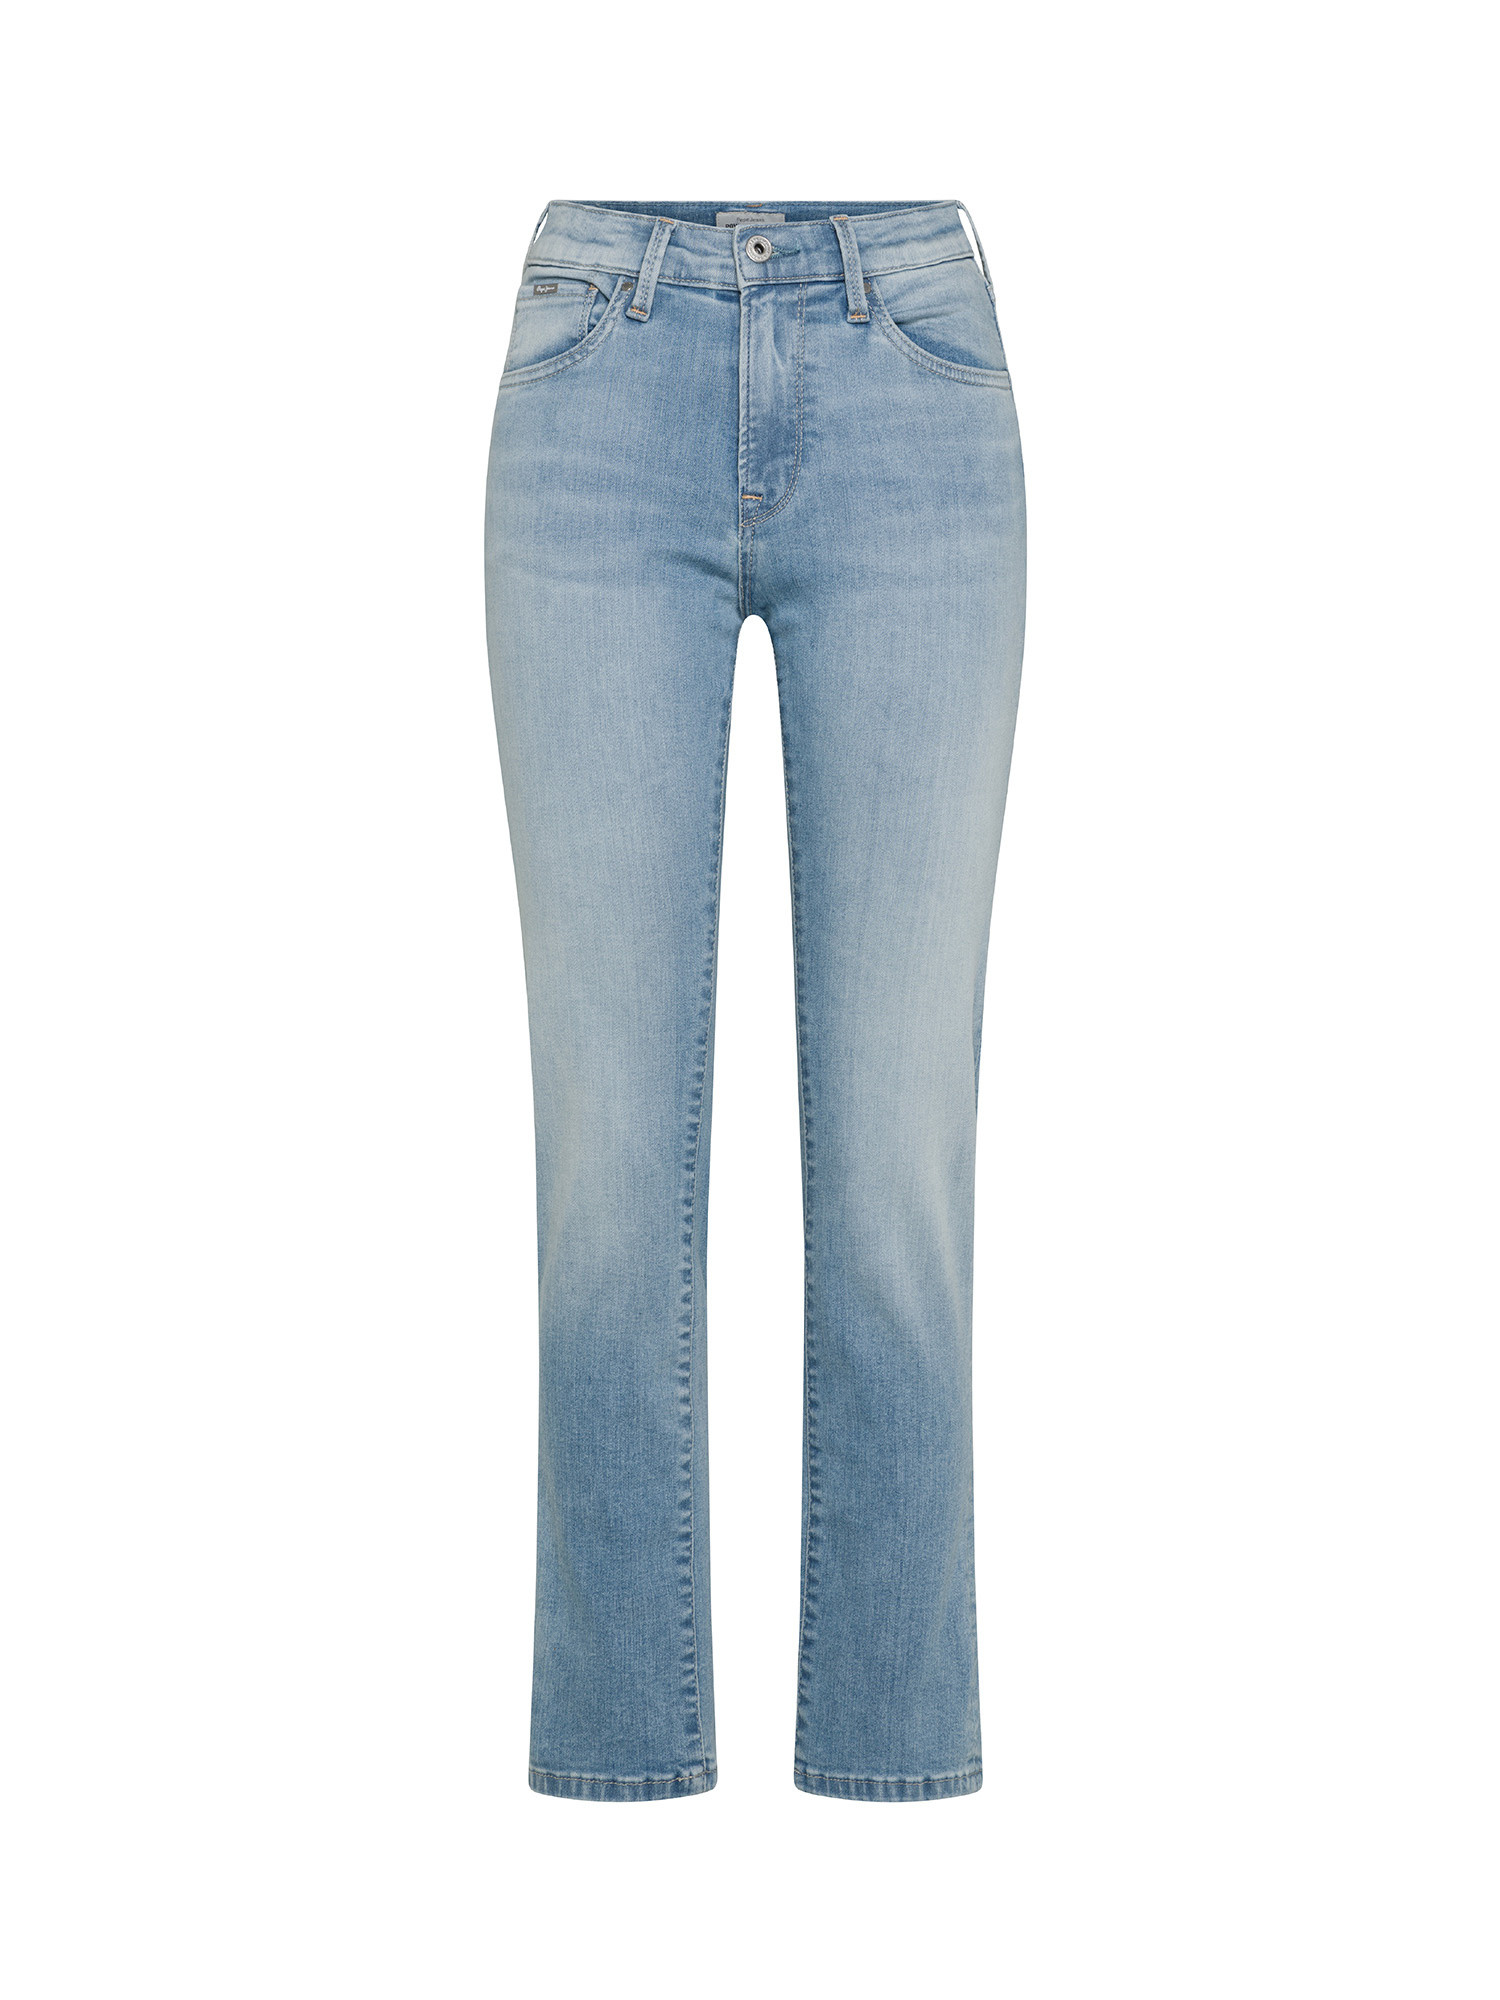 Pepe Jeans - Five pocket jeans, Light Blue, large image number 0